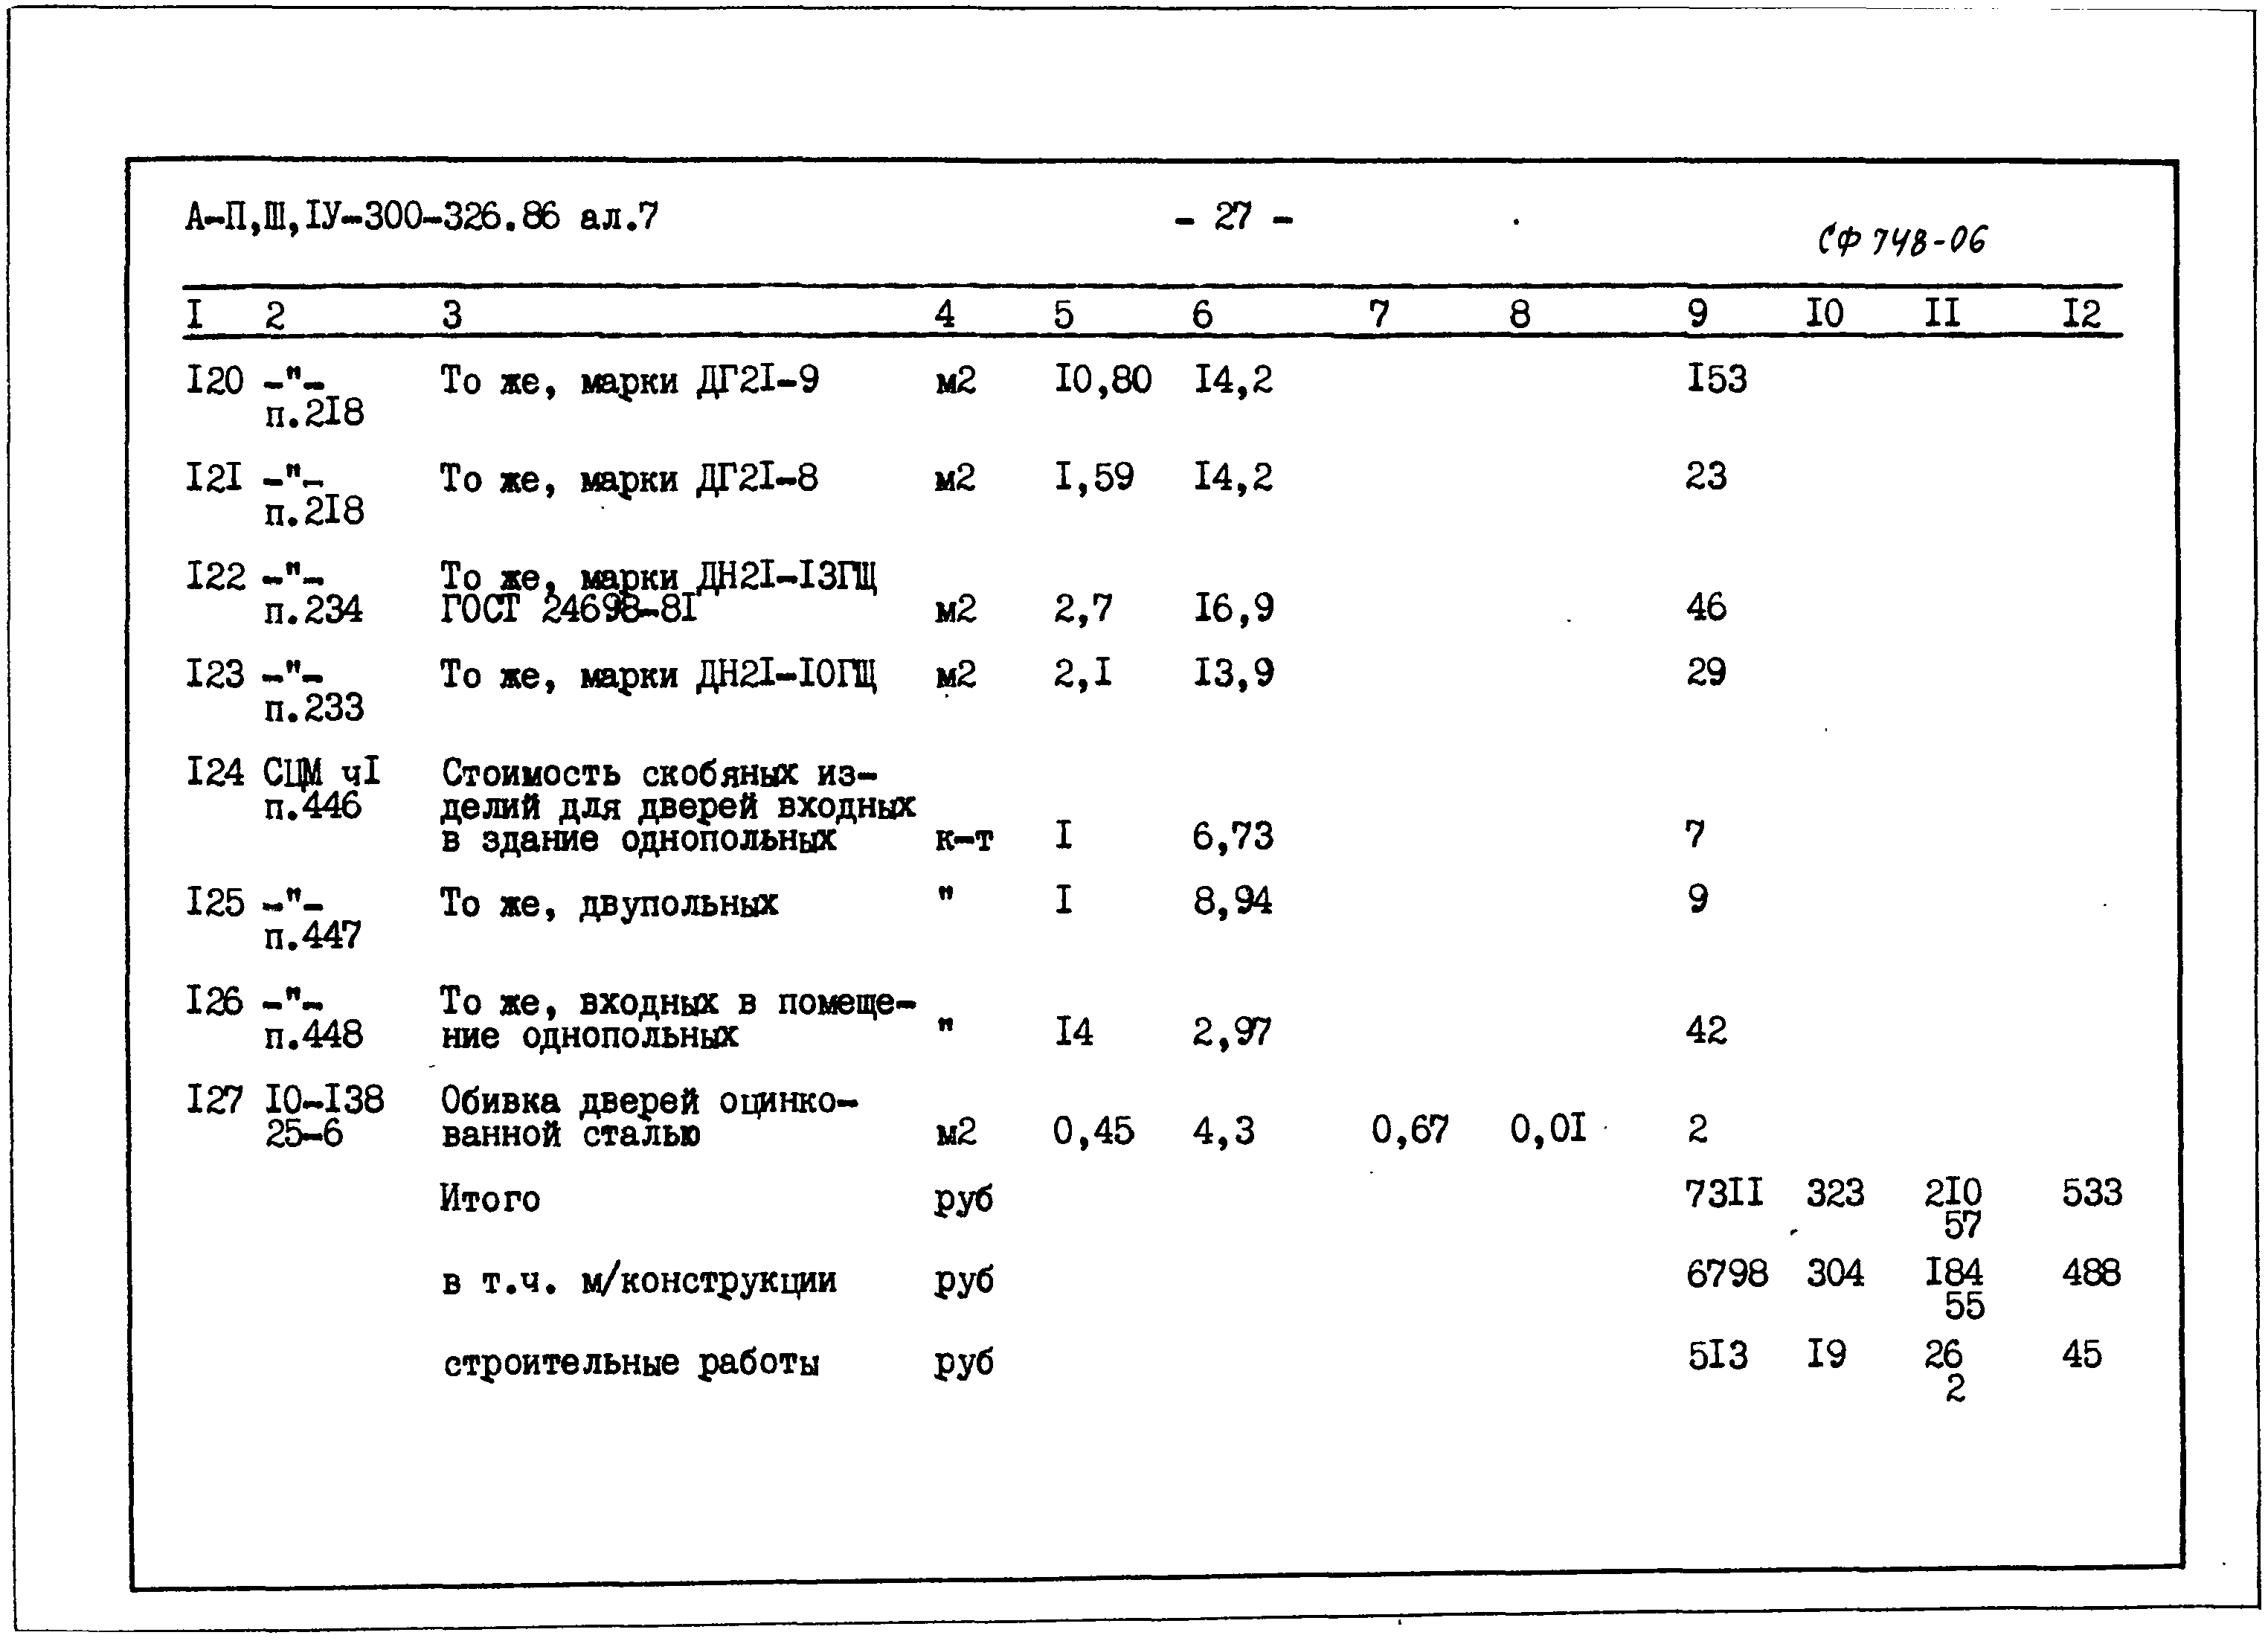 Типовой проект А-II,III,IV-300-326.86